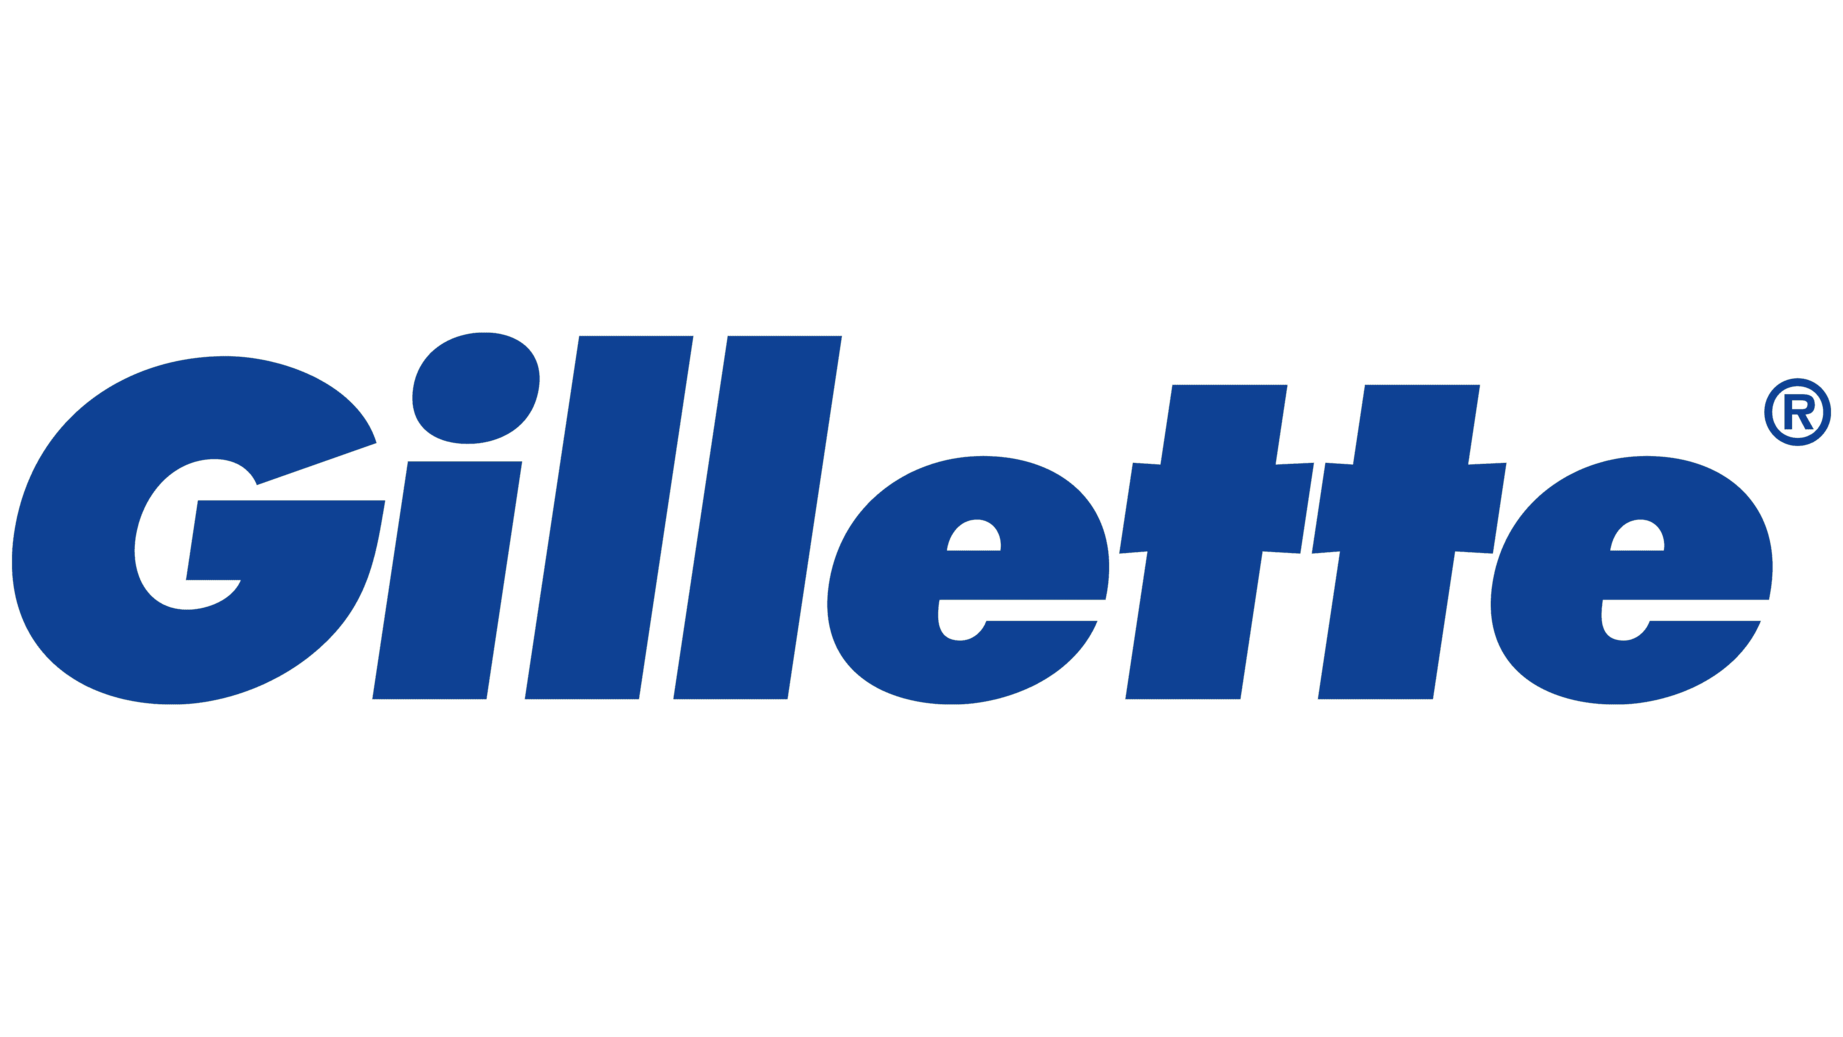 Gillette sign